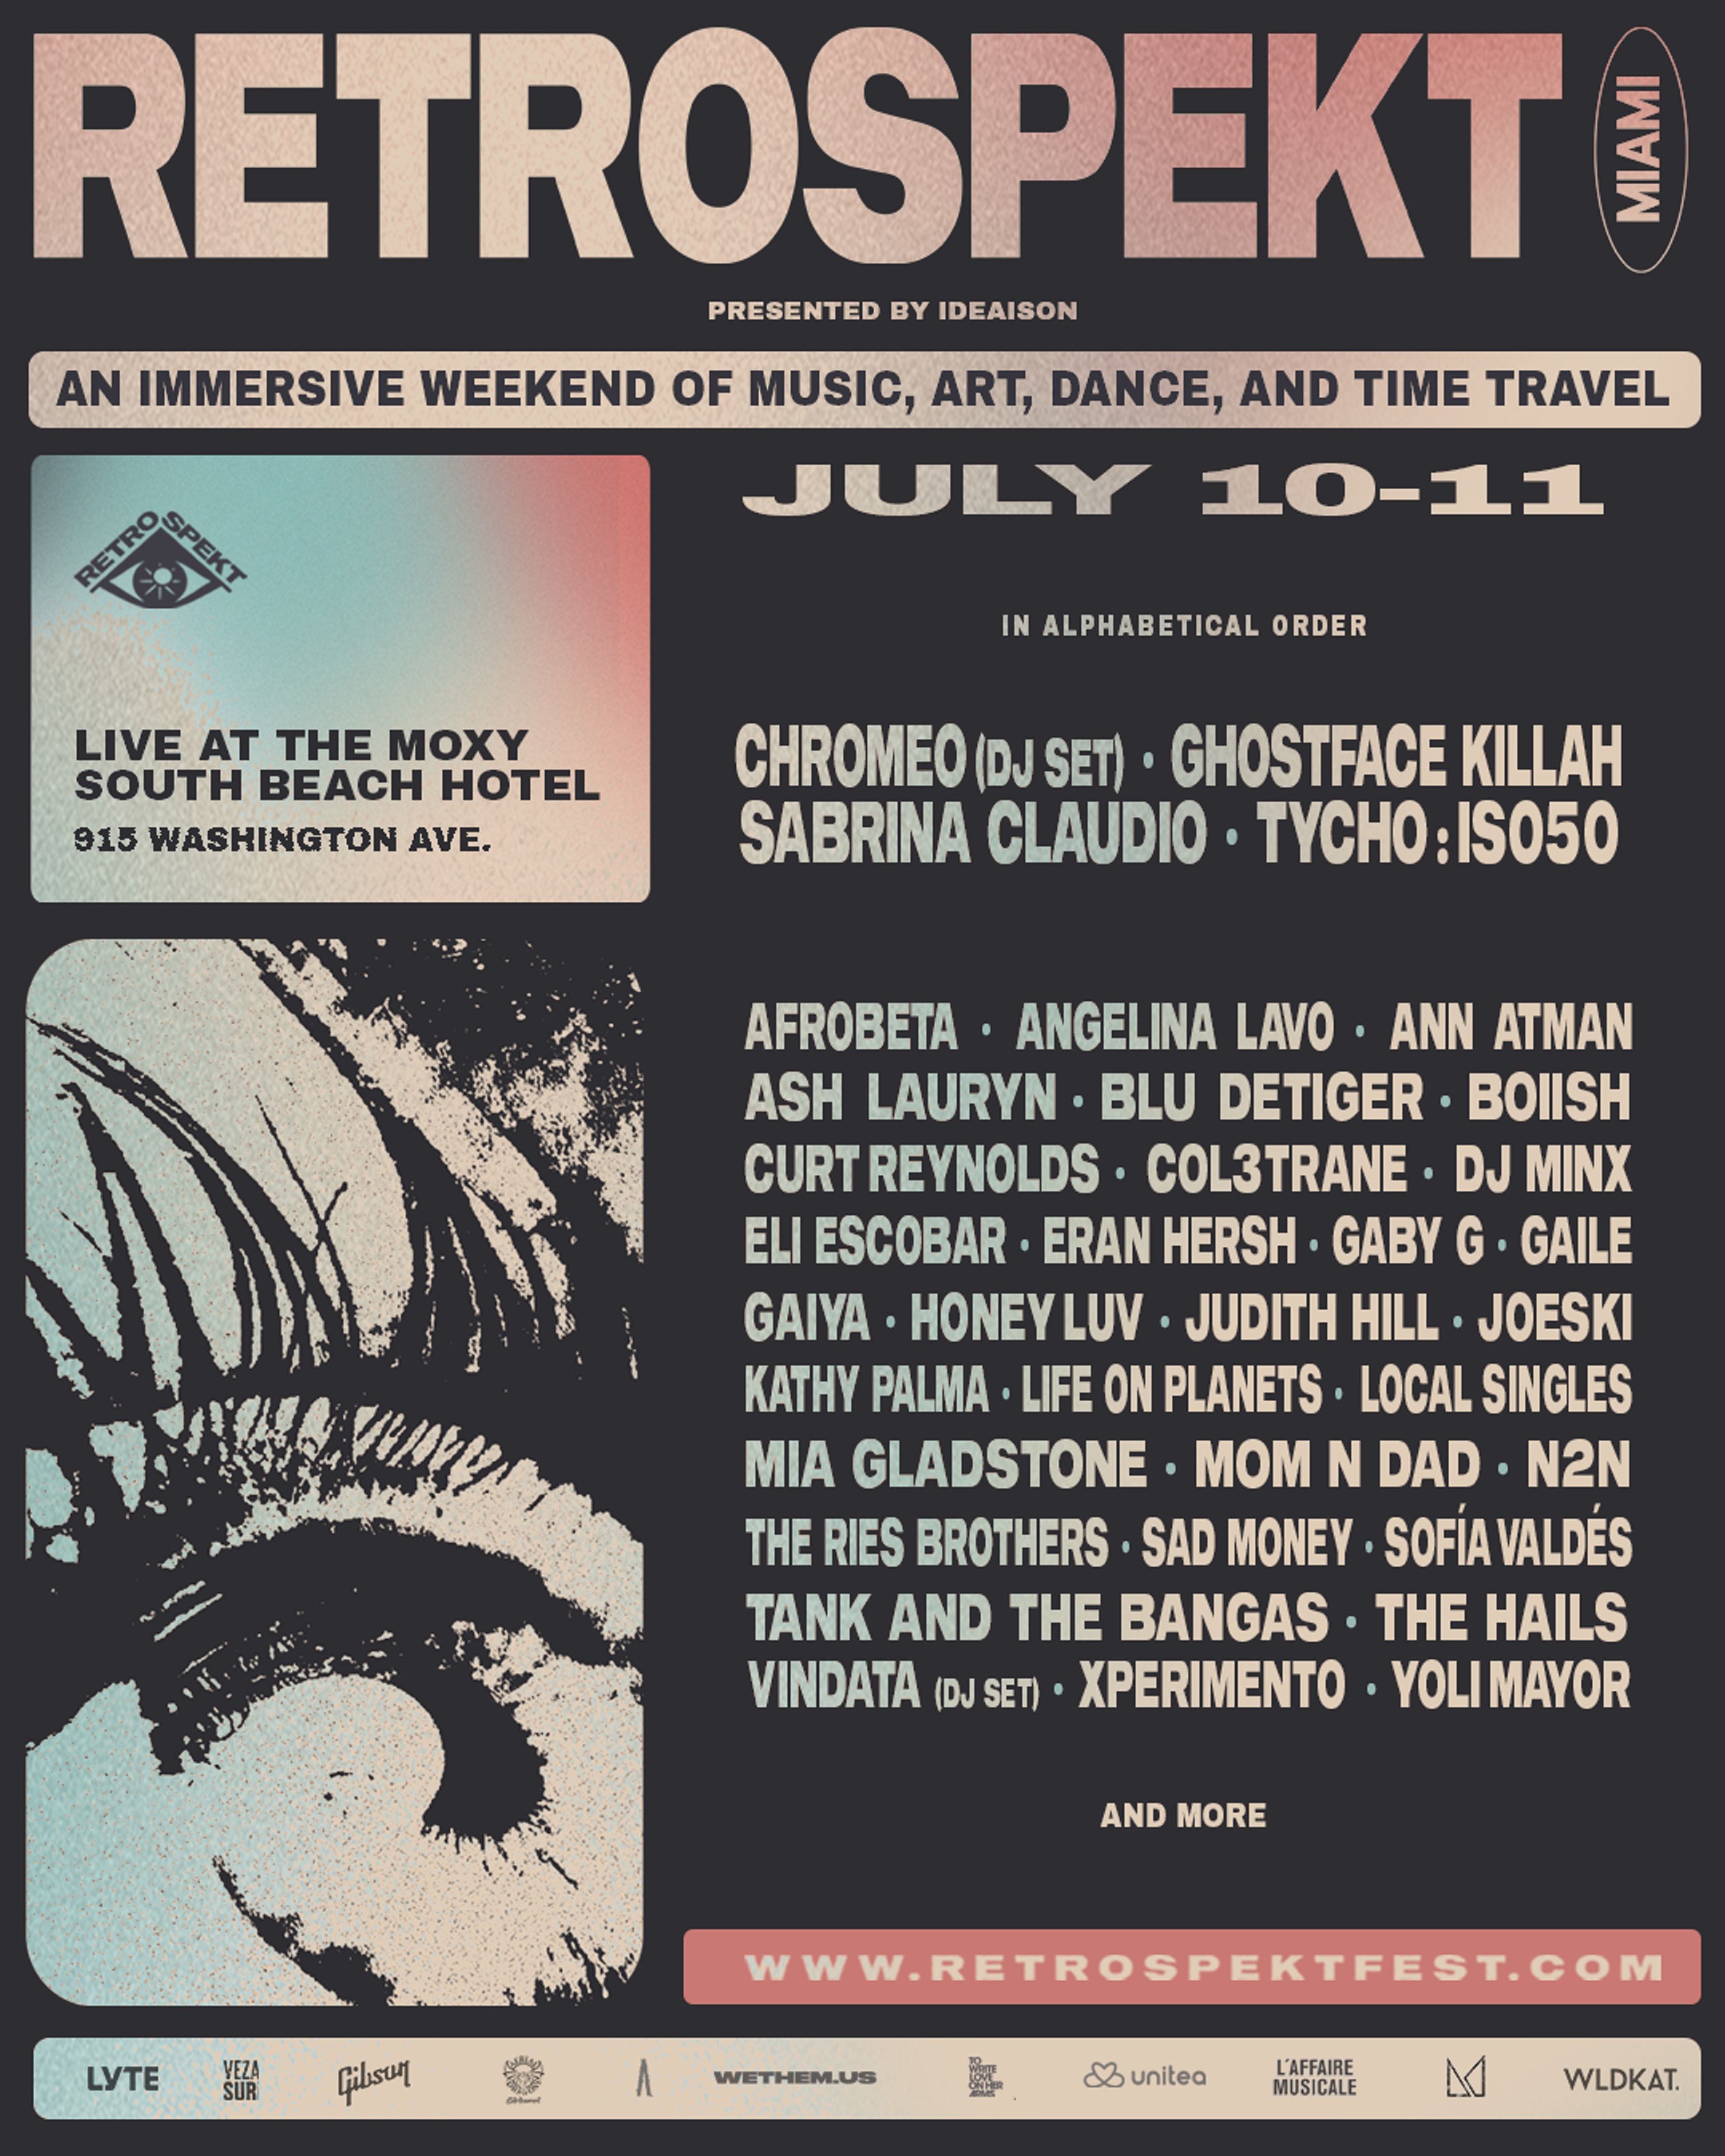 RETROSPEKT Festival Announces Line Up